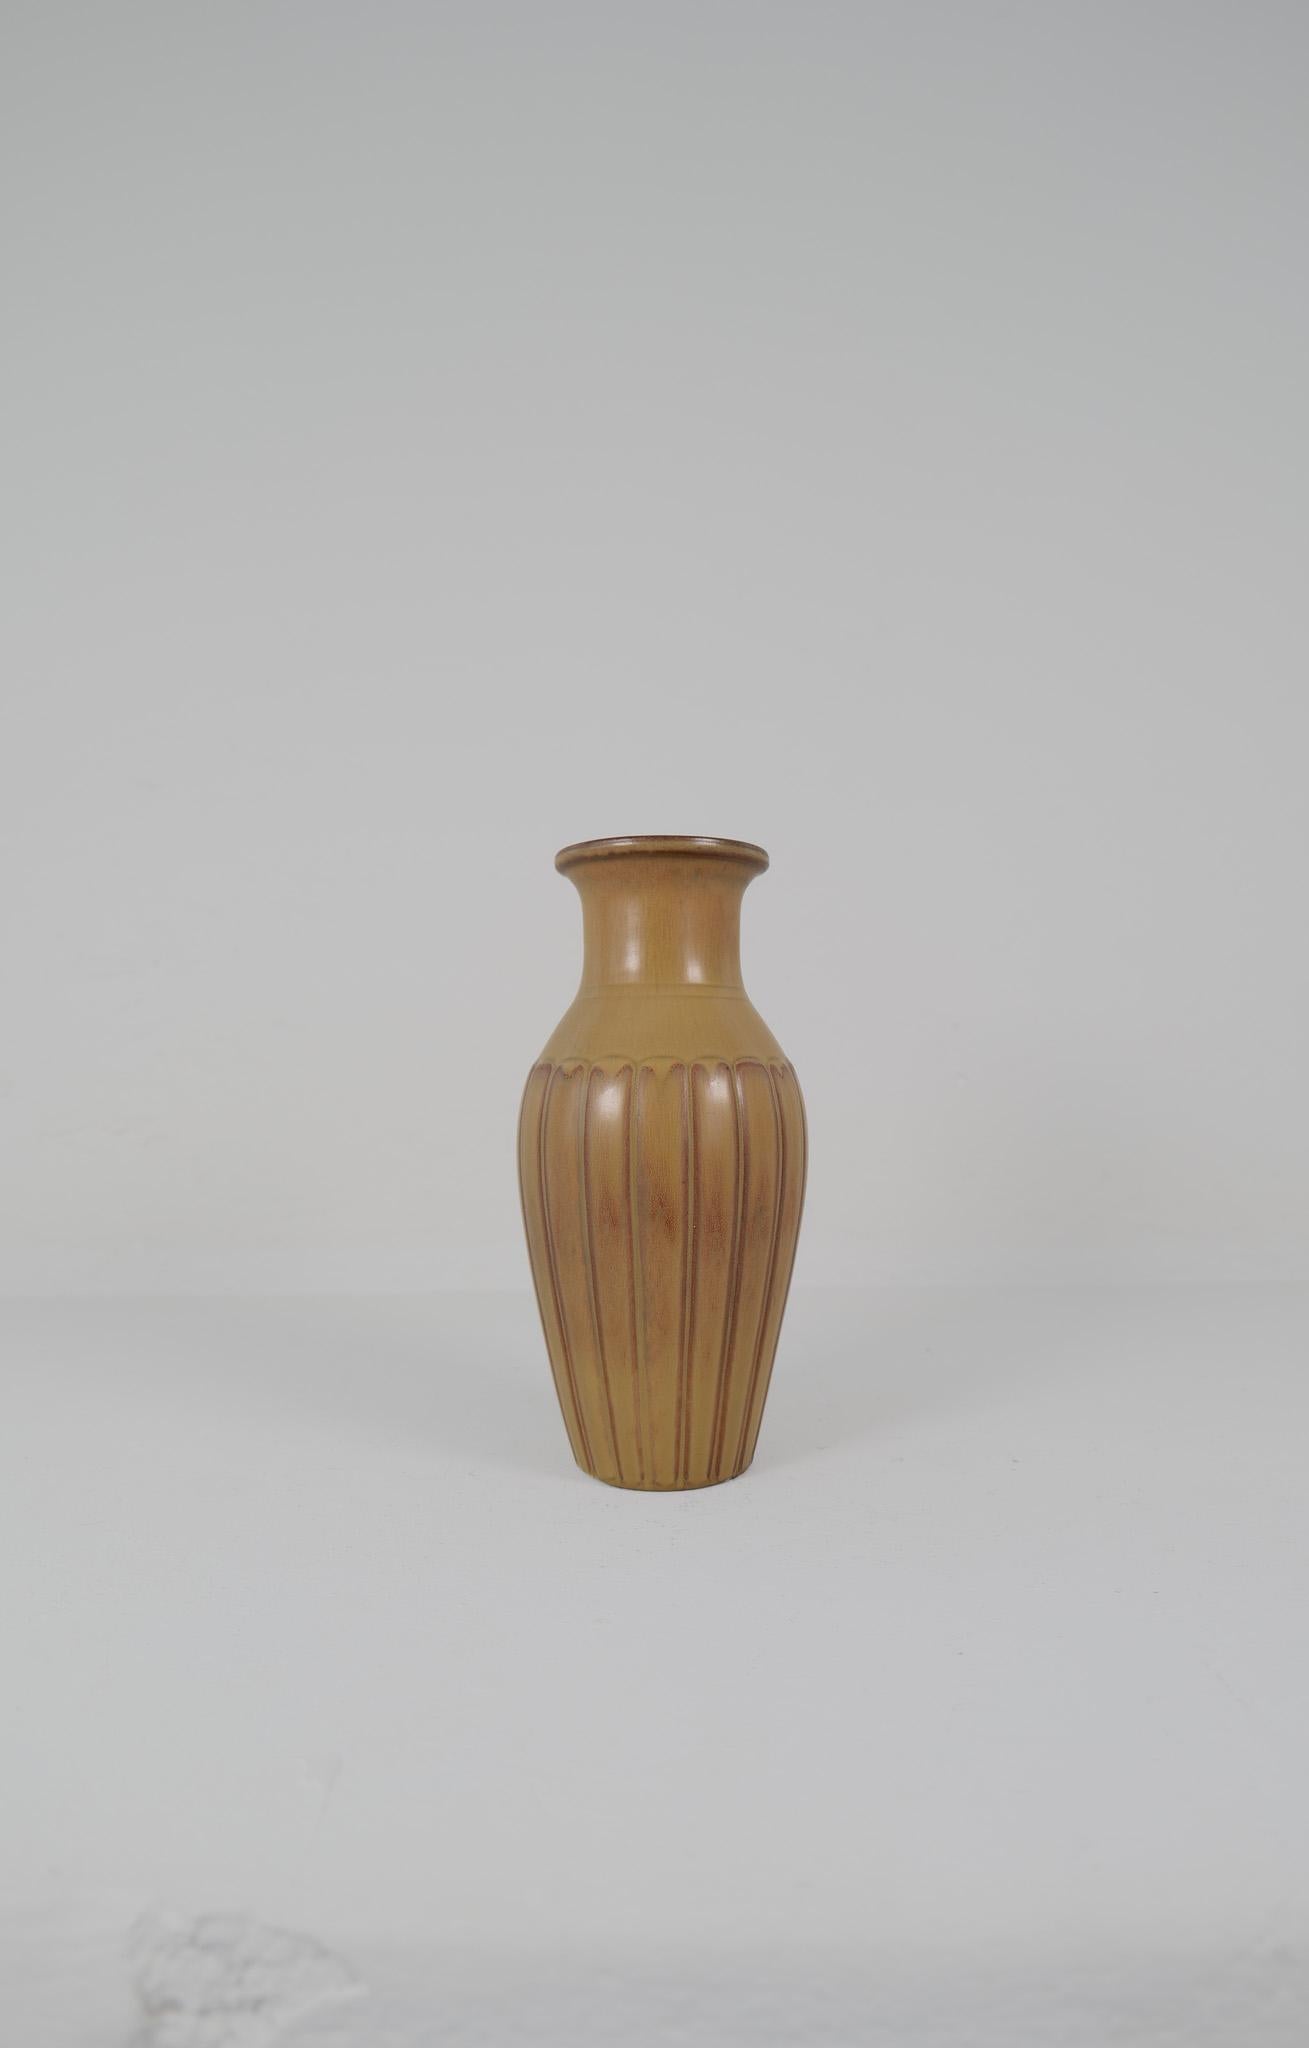 Ce grand vase inhabituel en grès de Gunnar Nylund pour Rörstrand 1950 est doté d'une glaçure harefur brun clair/vert/rouge. Il a en outre l'aspect époustouflant de l'excellent travail de Nylund. Il donne vraiment une bonne impression. 

Signé